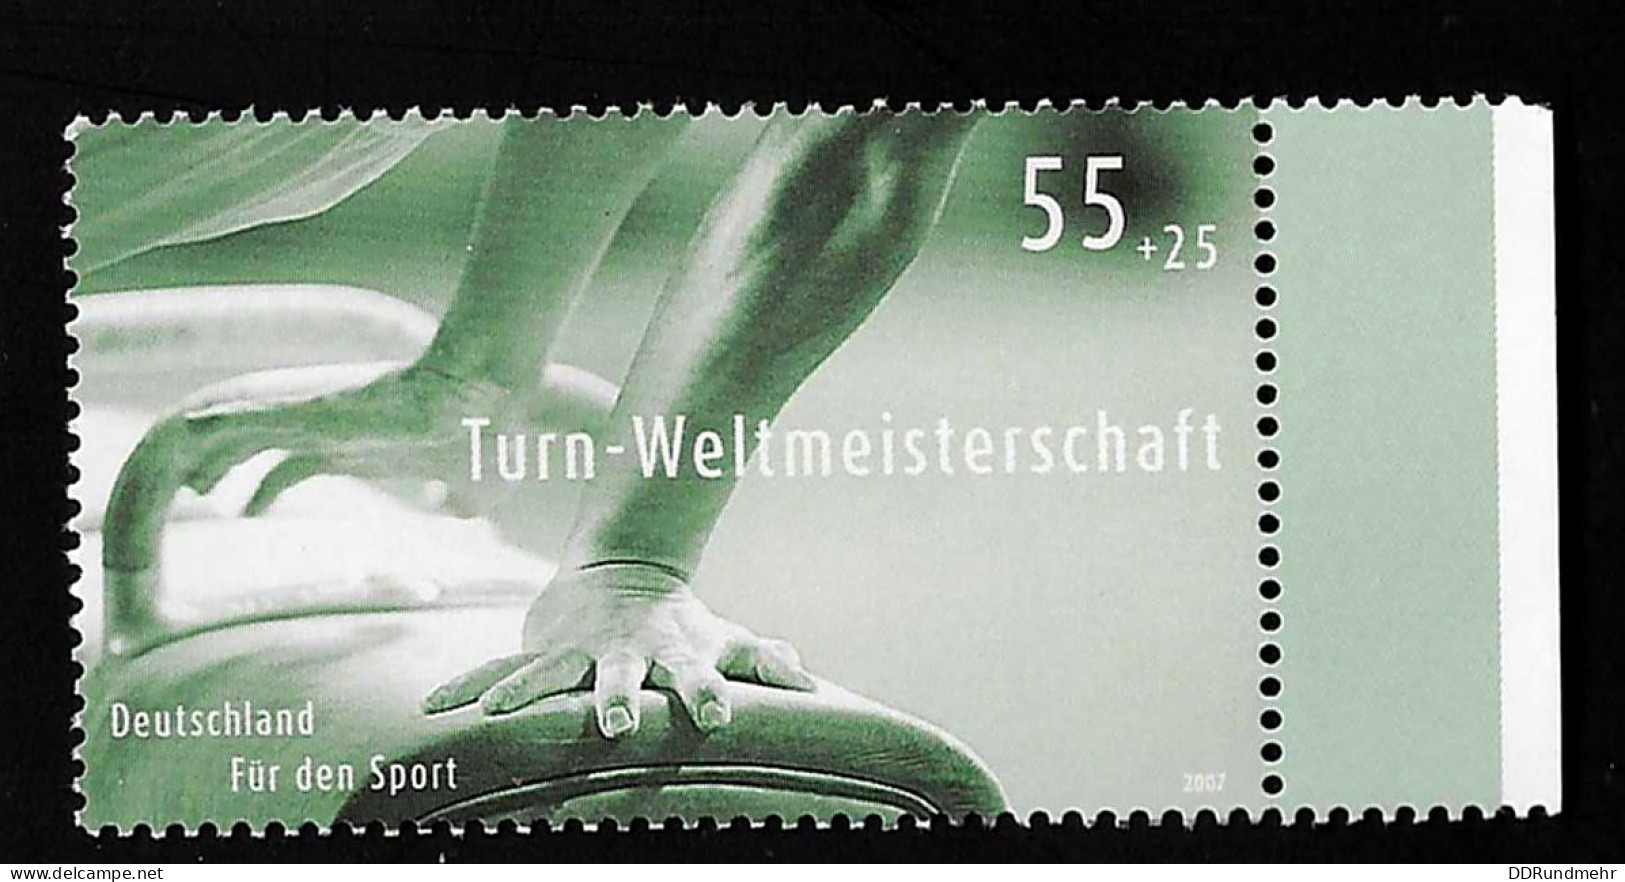 2007 Gymnastics  Michel DE 2586 Stamp Number DE B986 Yvert Et Tellier DE 2412 Stanley Gibbons DE 3463 Xx MNH - Ongebruikt